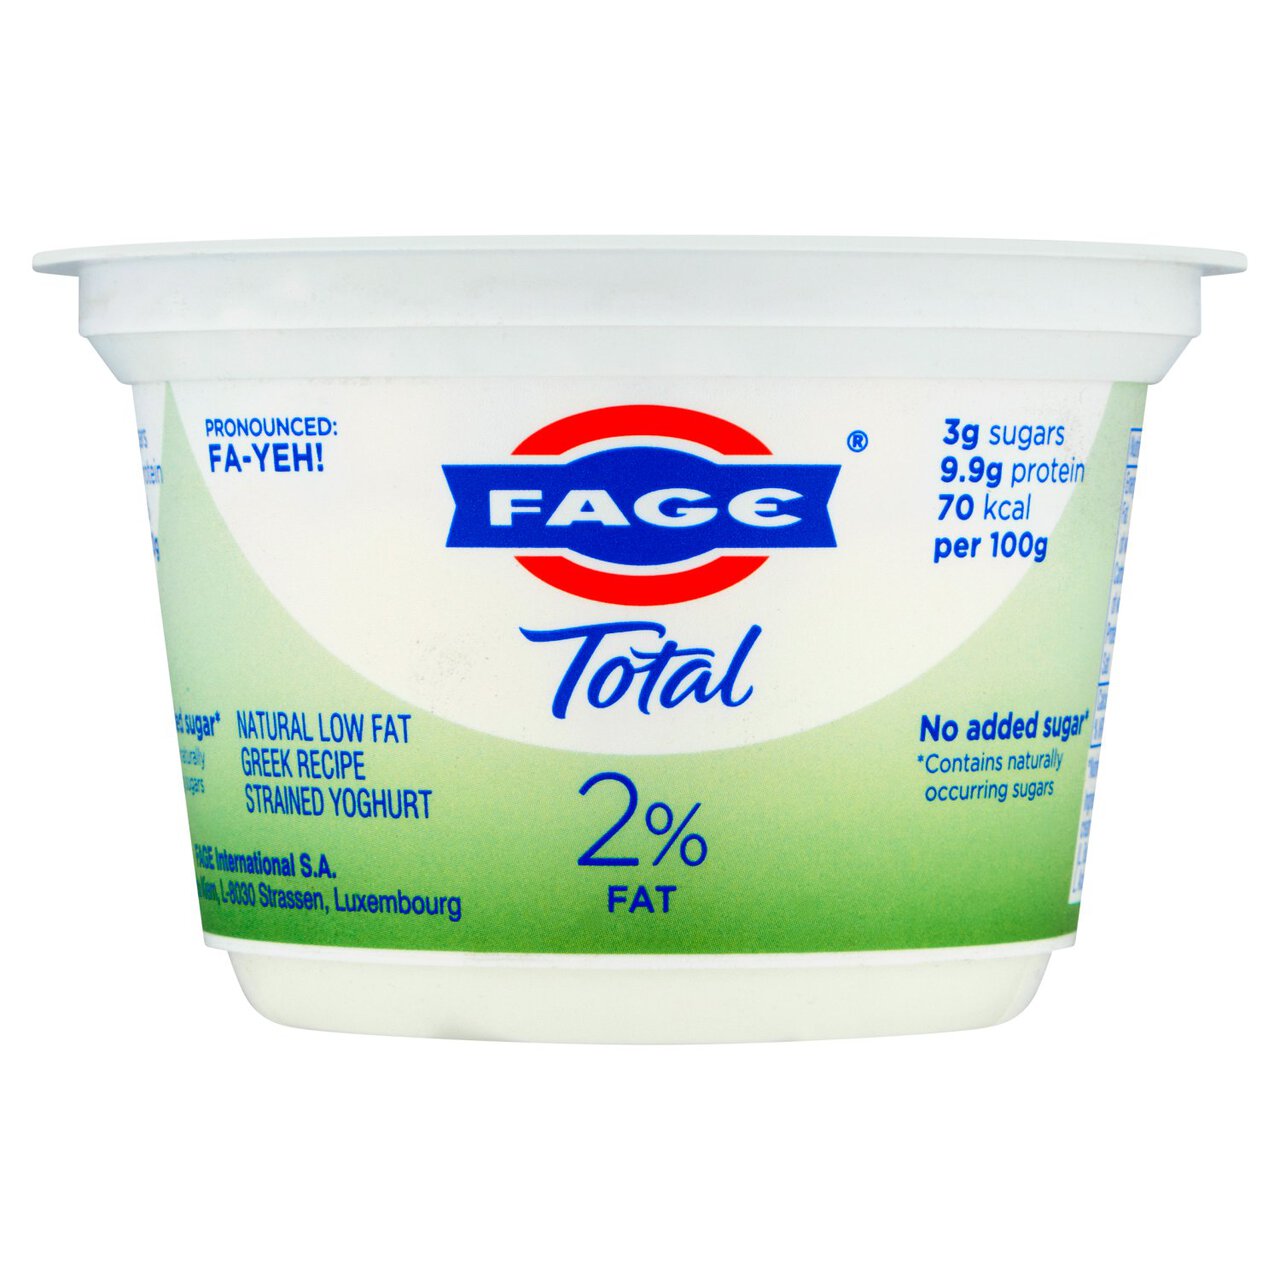 Fage Total 2% Low Fat Greek Recipe Strained Yoghurt 150g